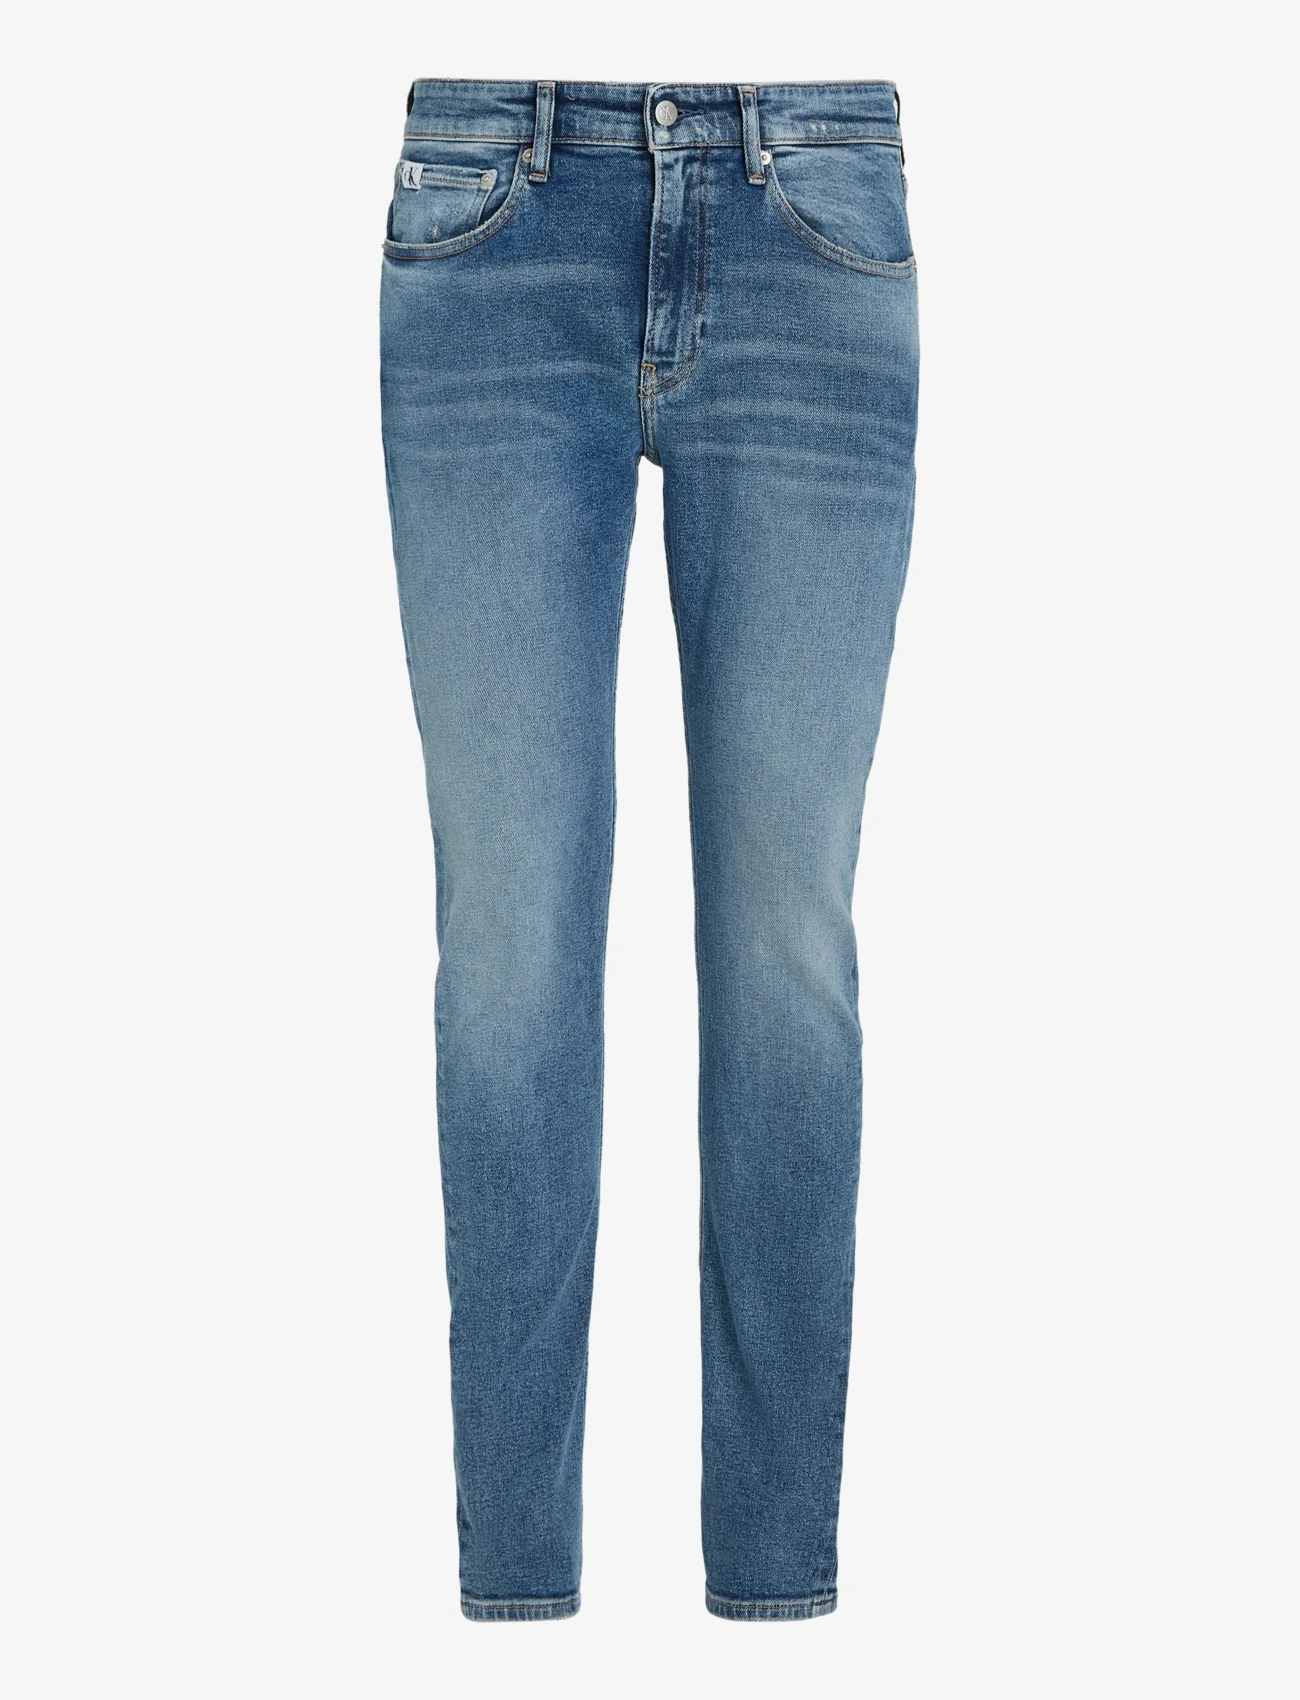 Calvin Klein Jeans - SLIM TAPER - slim jeans - denim light - 0